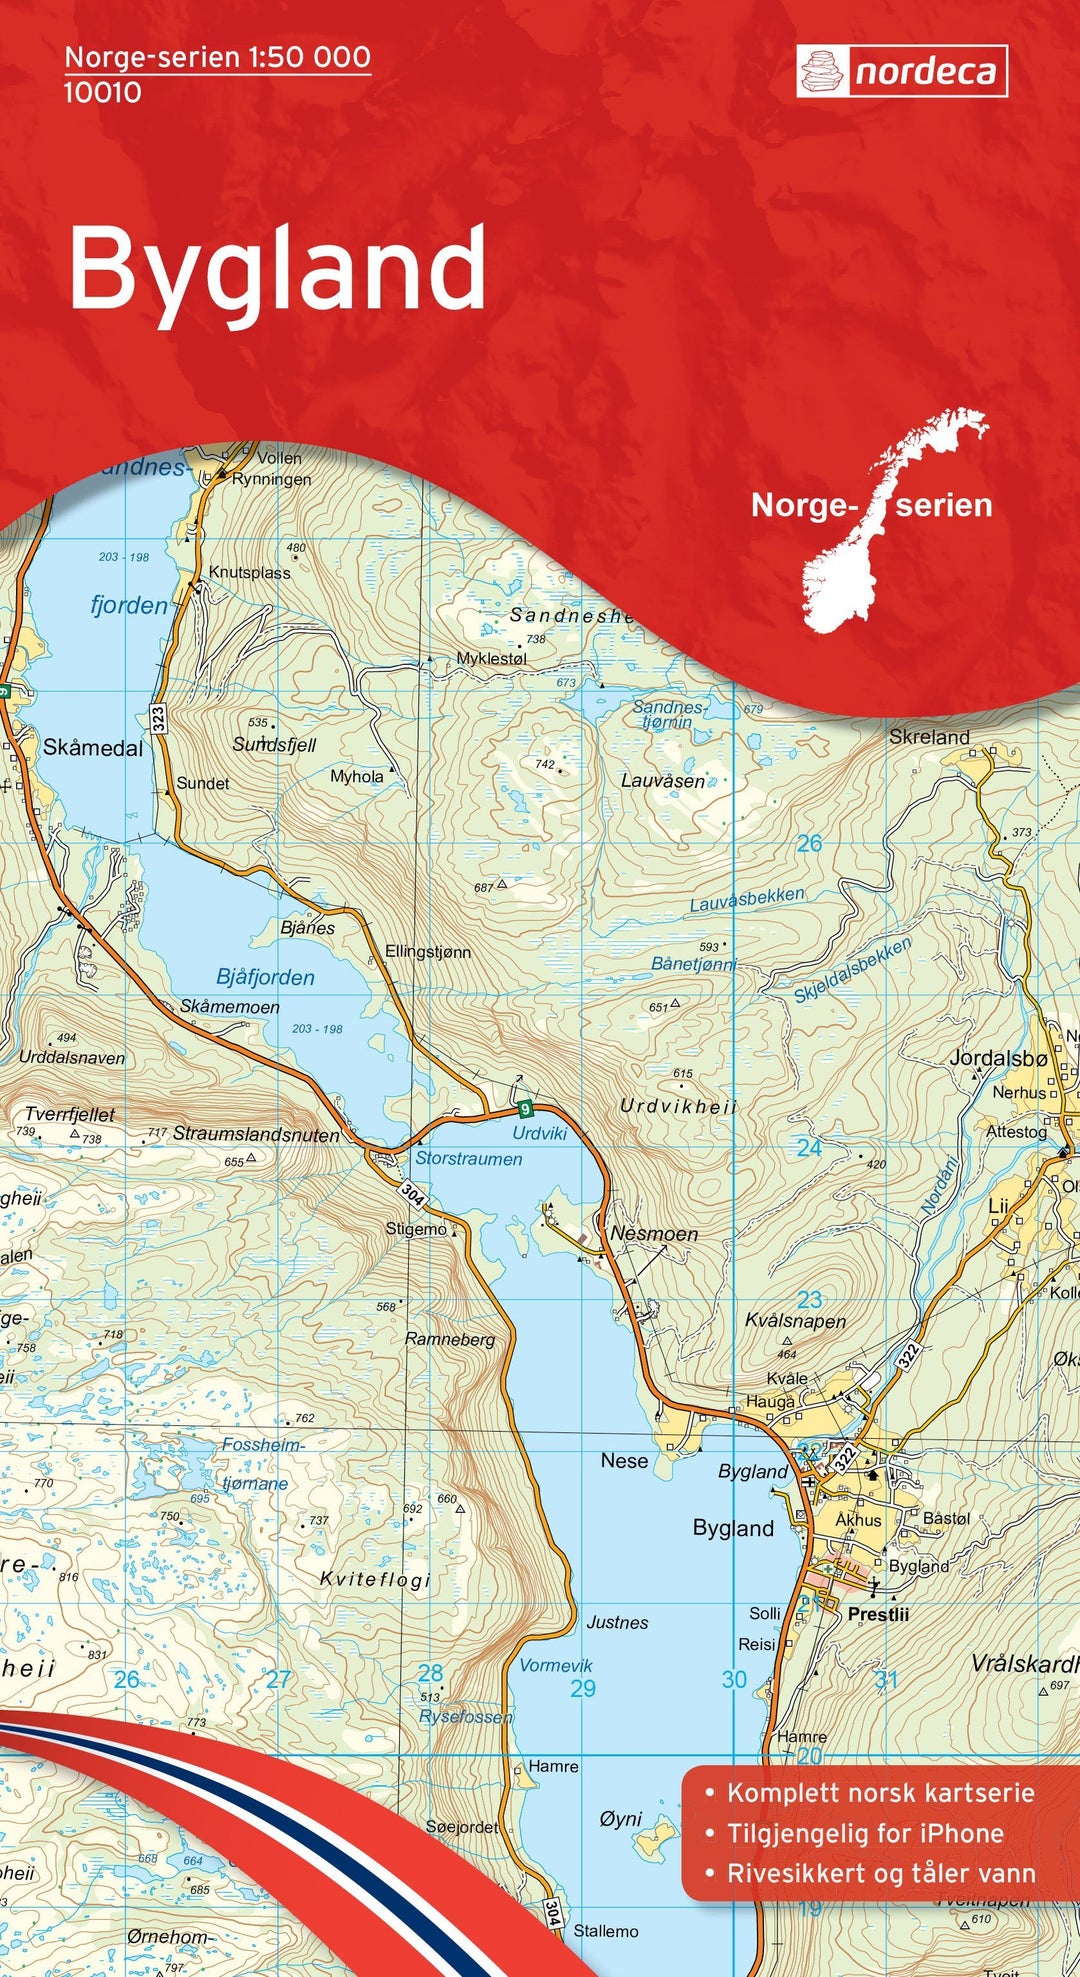 Carte de randonnée n° 10010 - Bygland (Norvège) | Nordeca - Norge-serien carte pliée Nordeca 